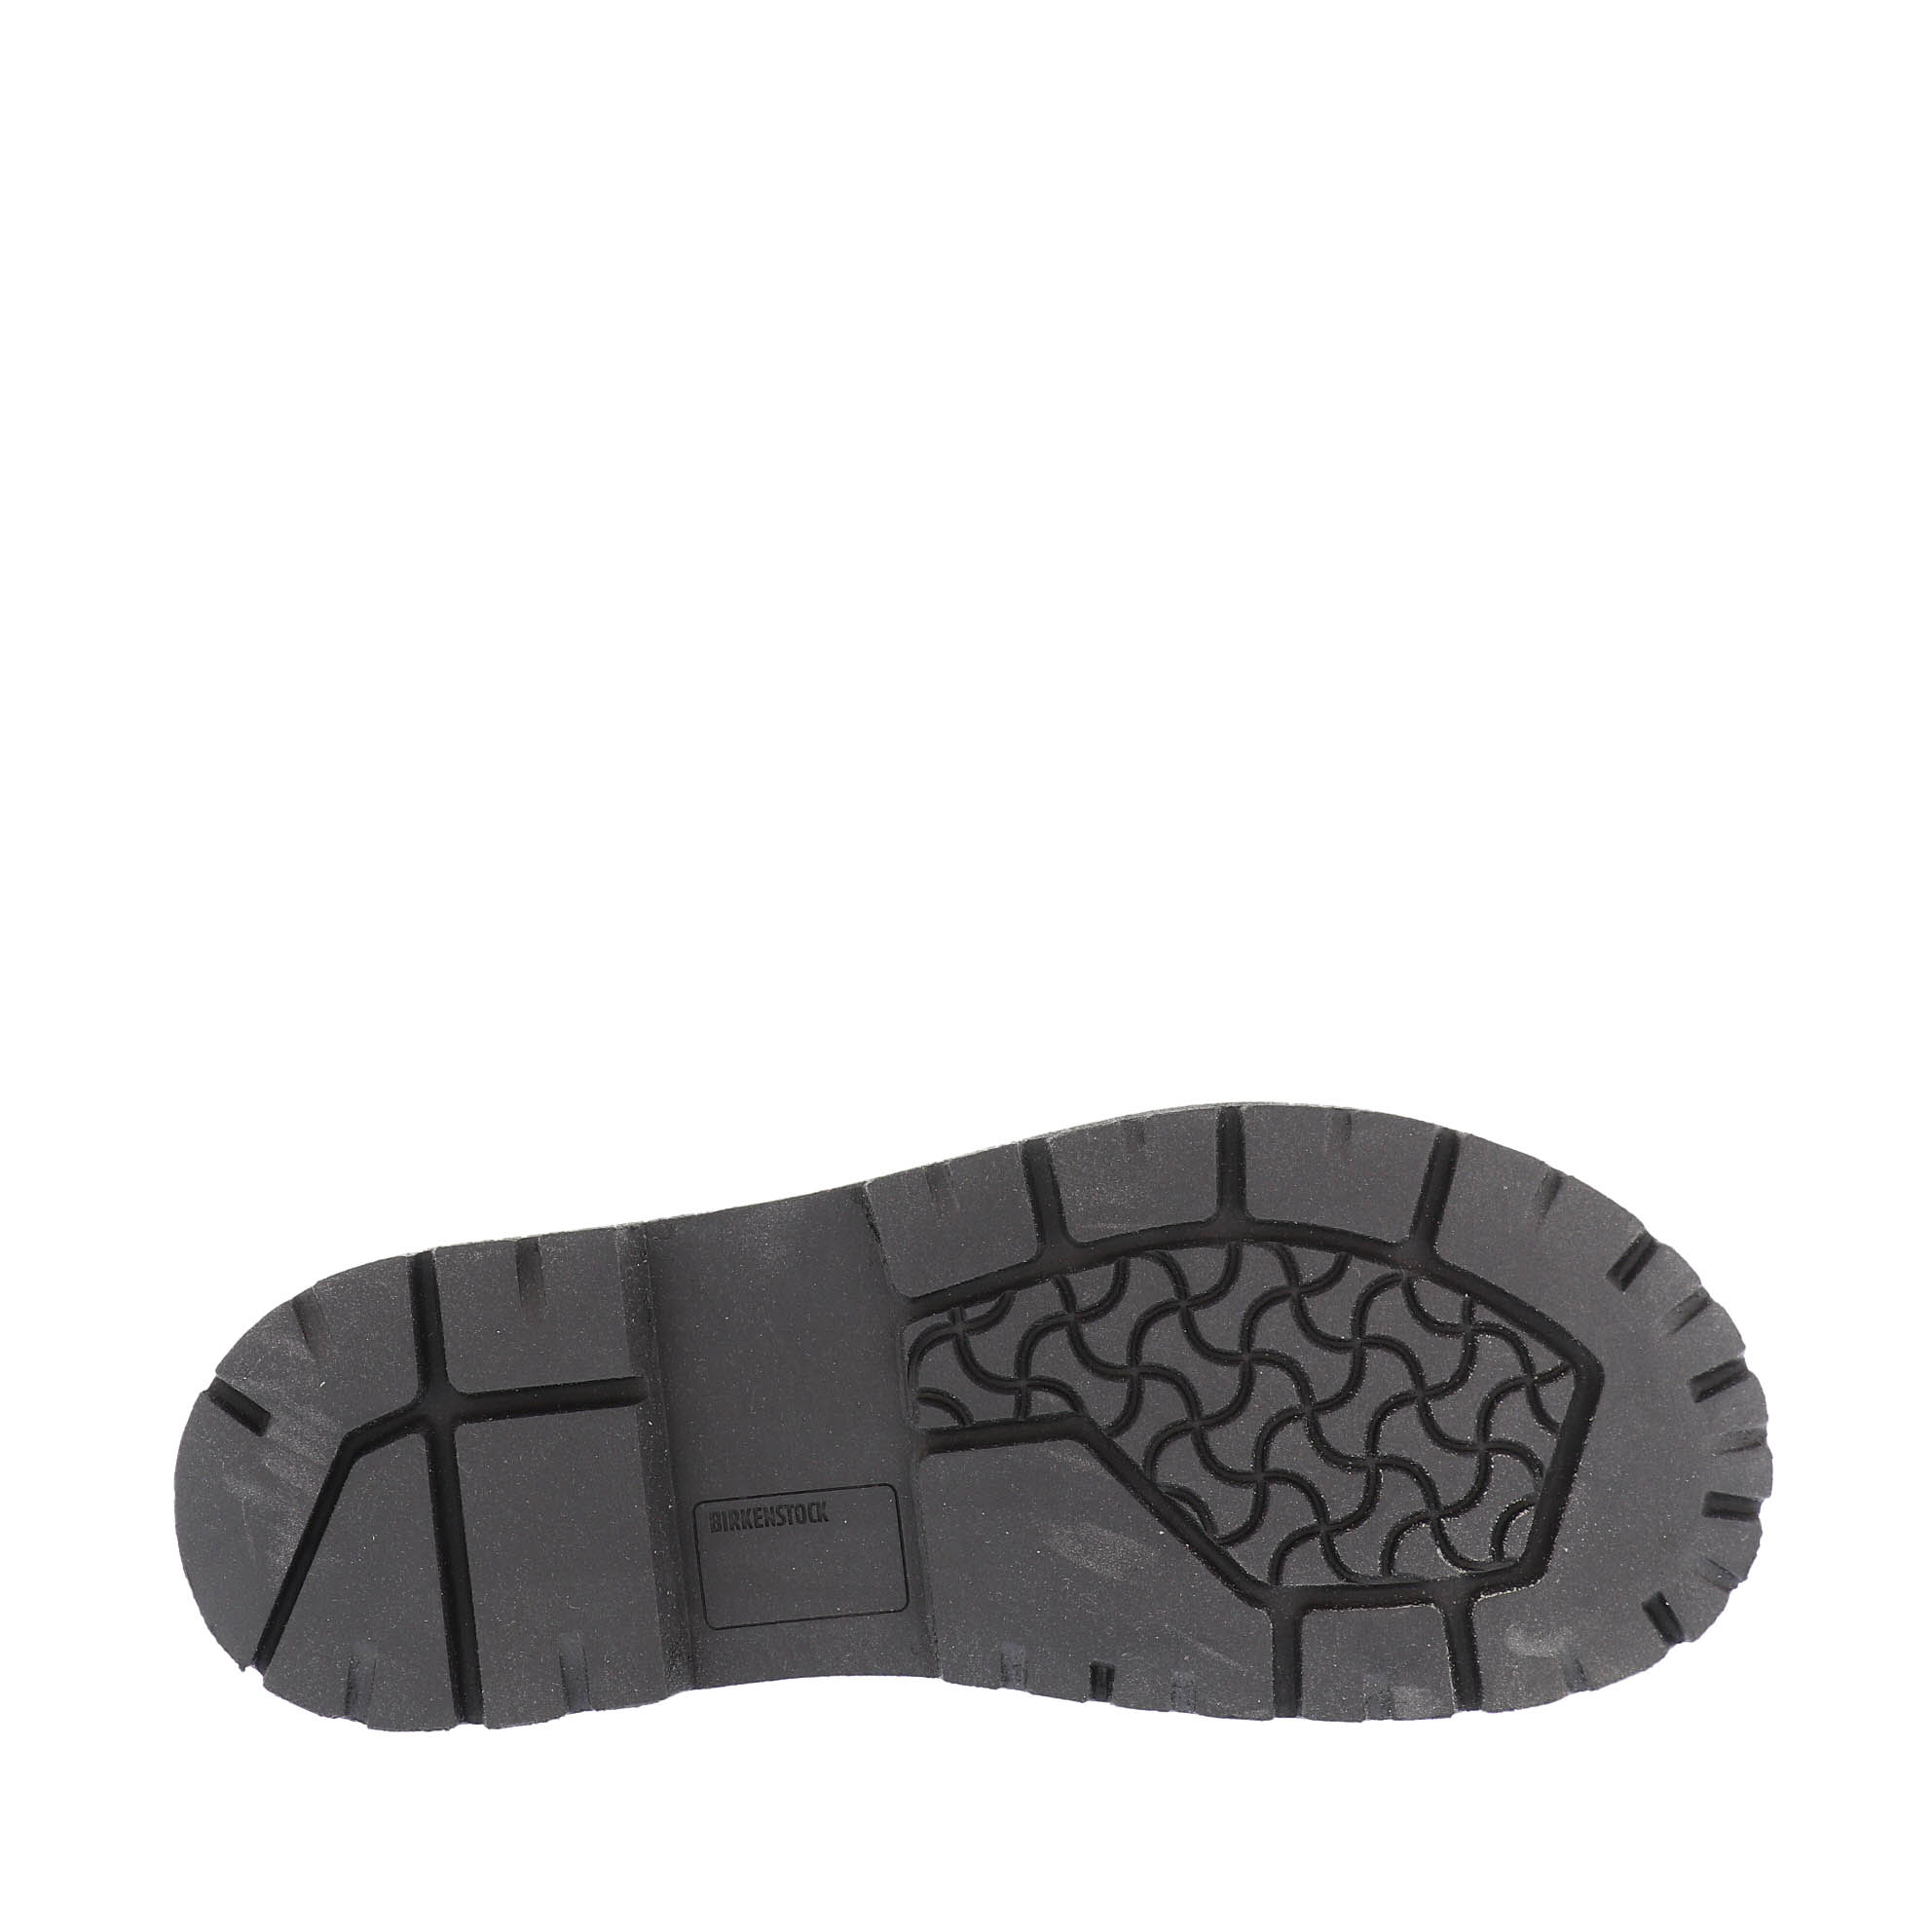 Birkenstock rubber sole